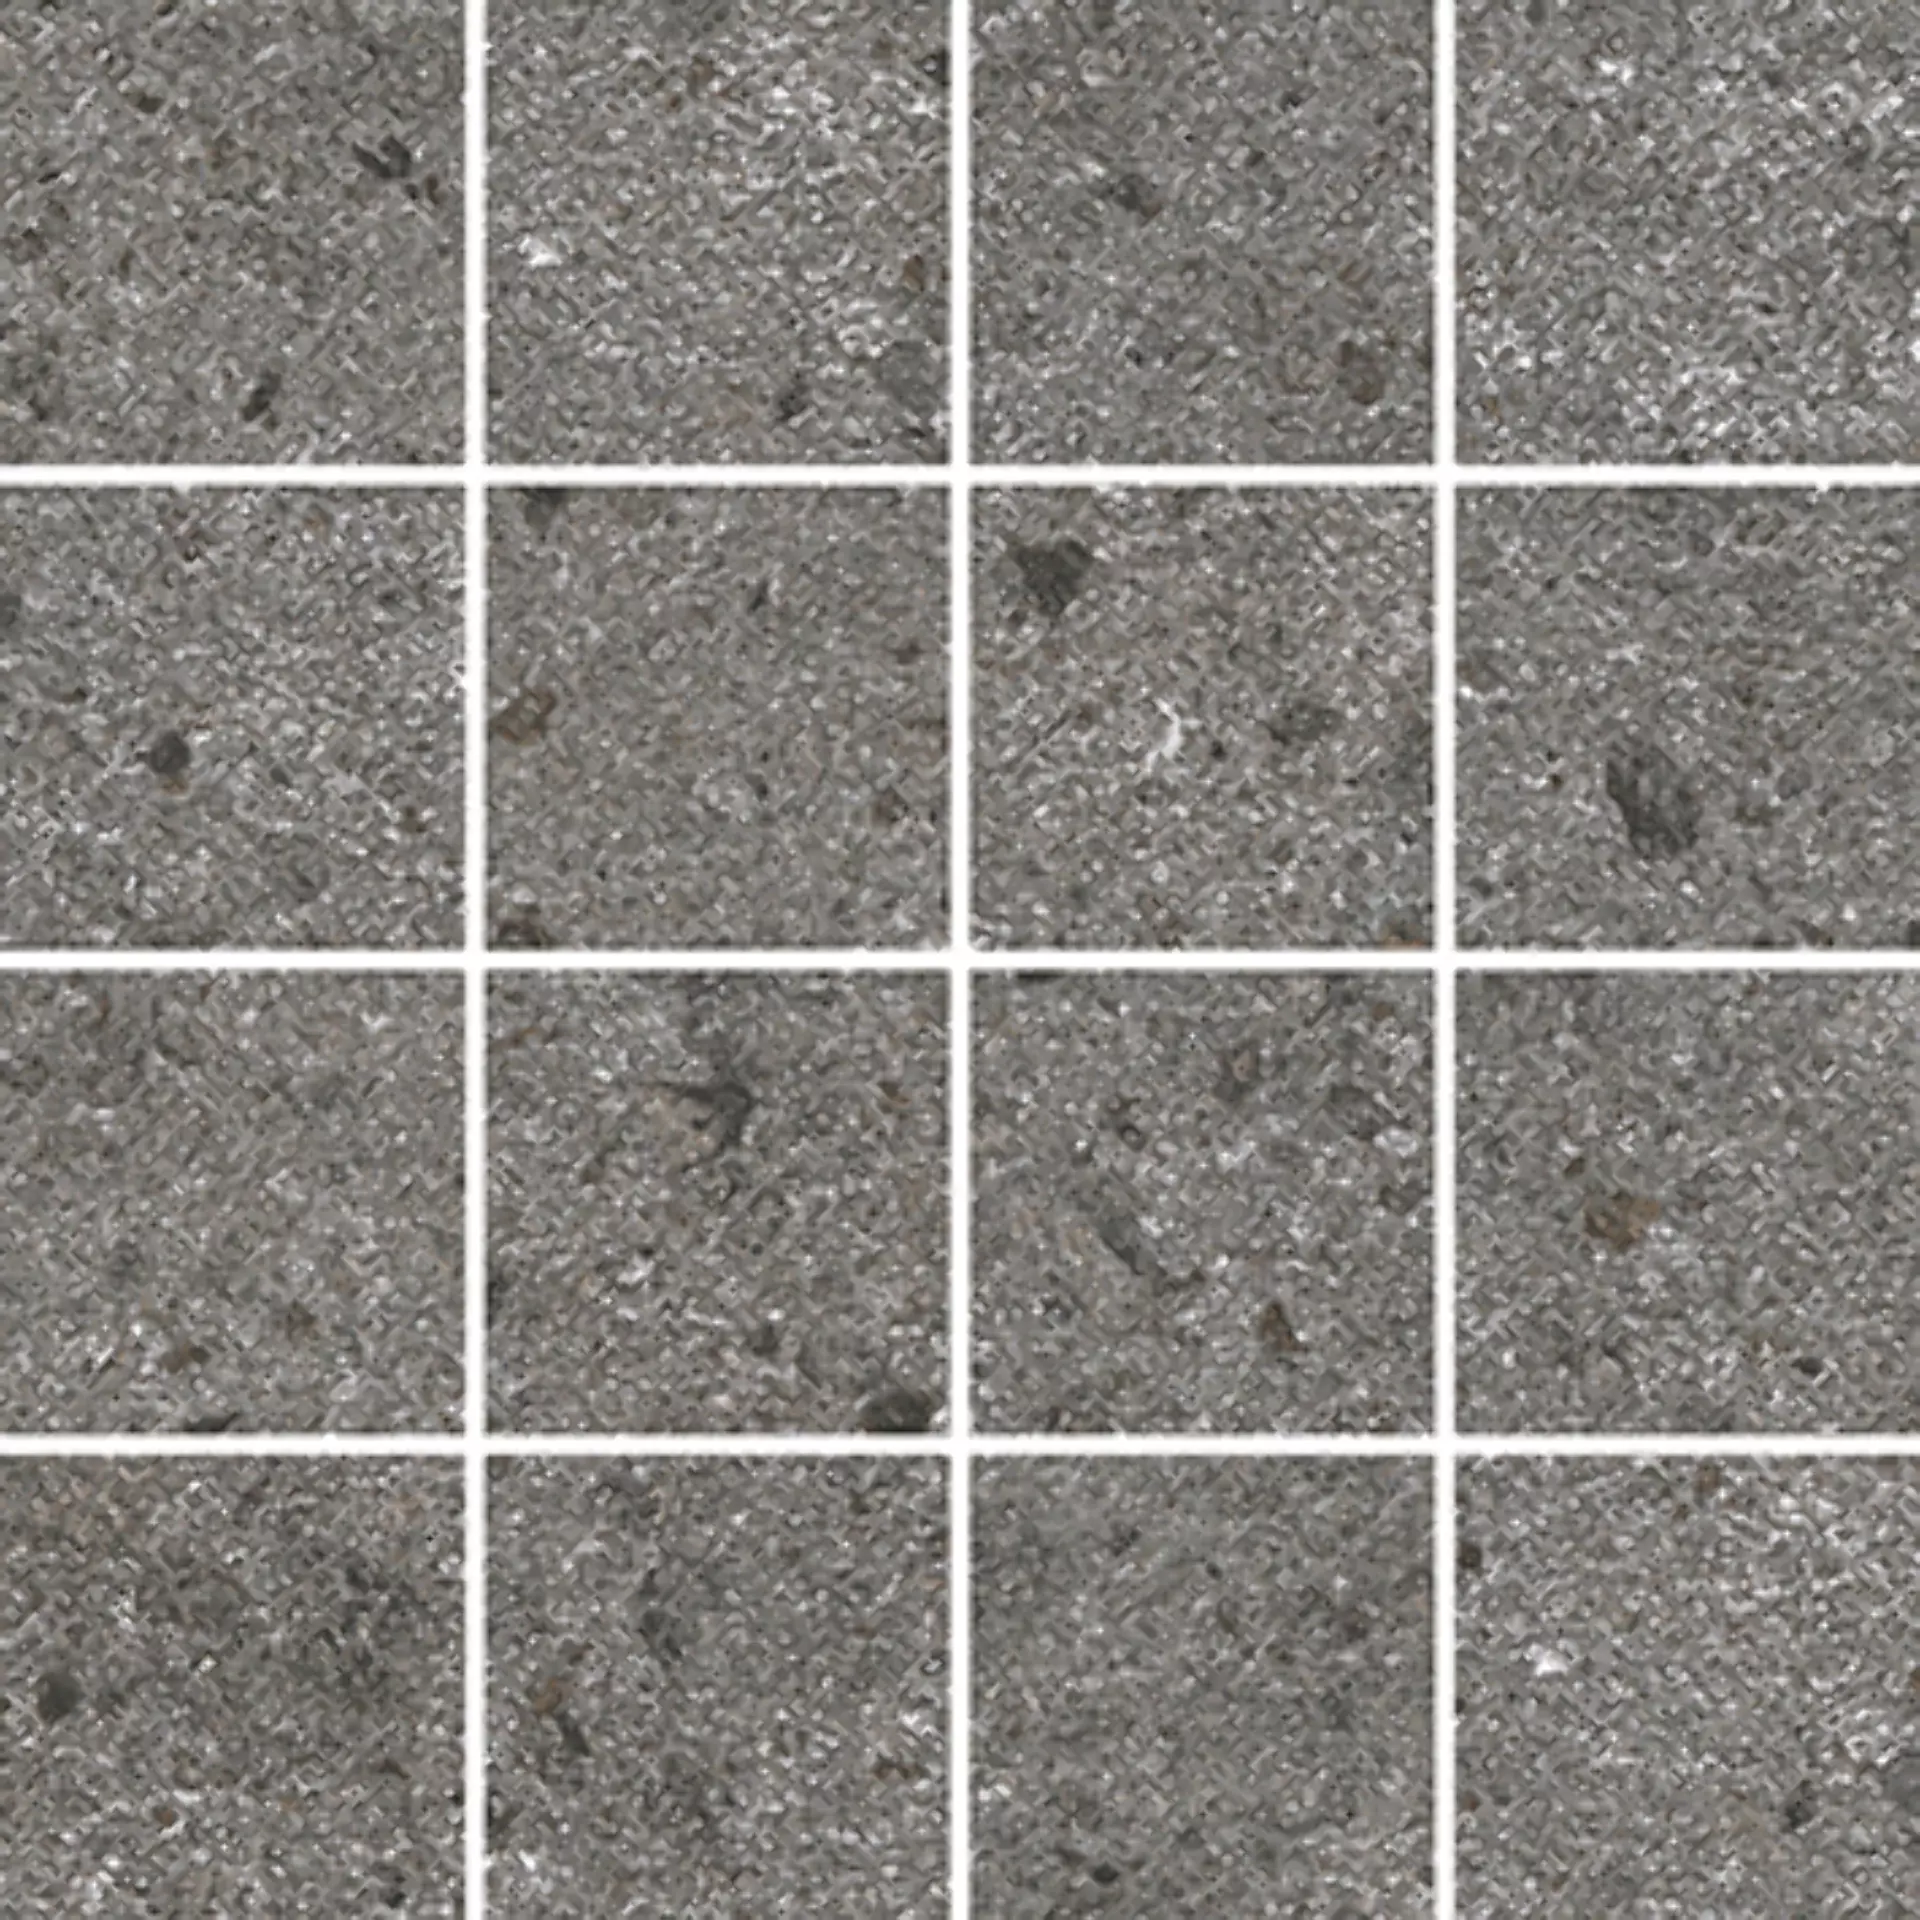 Wandfliese,Bodenfliese Villeroy & Boch Aberdeen Slate Grey Matt Slate Grey 2013-SB90 matt 7,5x7,5cm Mosaik (7,5x7,5) rektifiziert 10mm